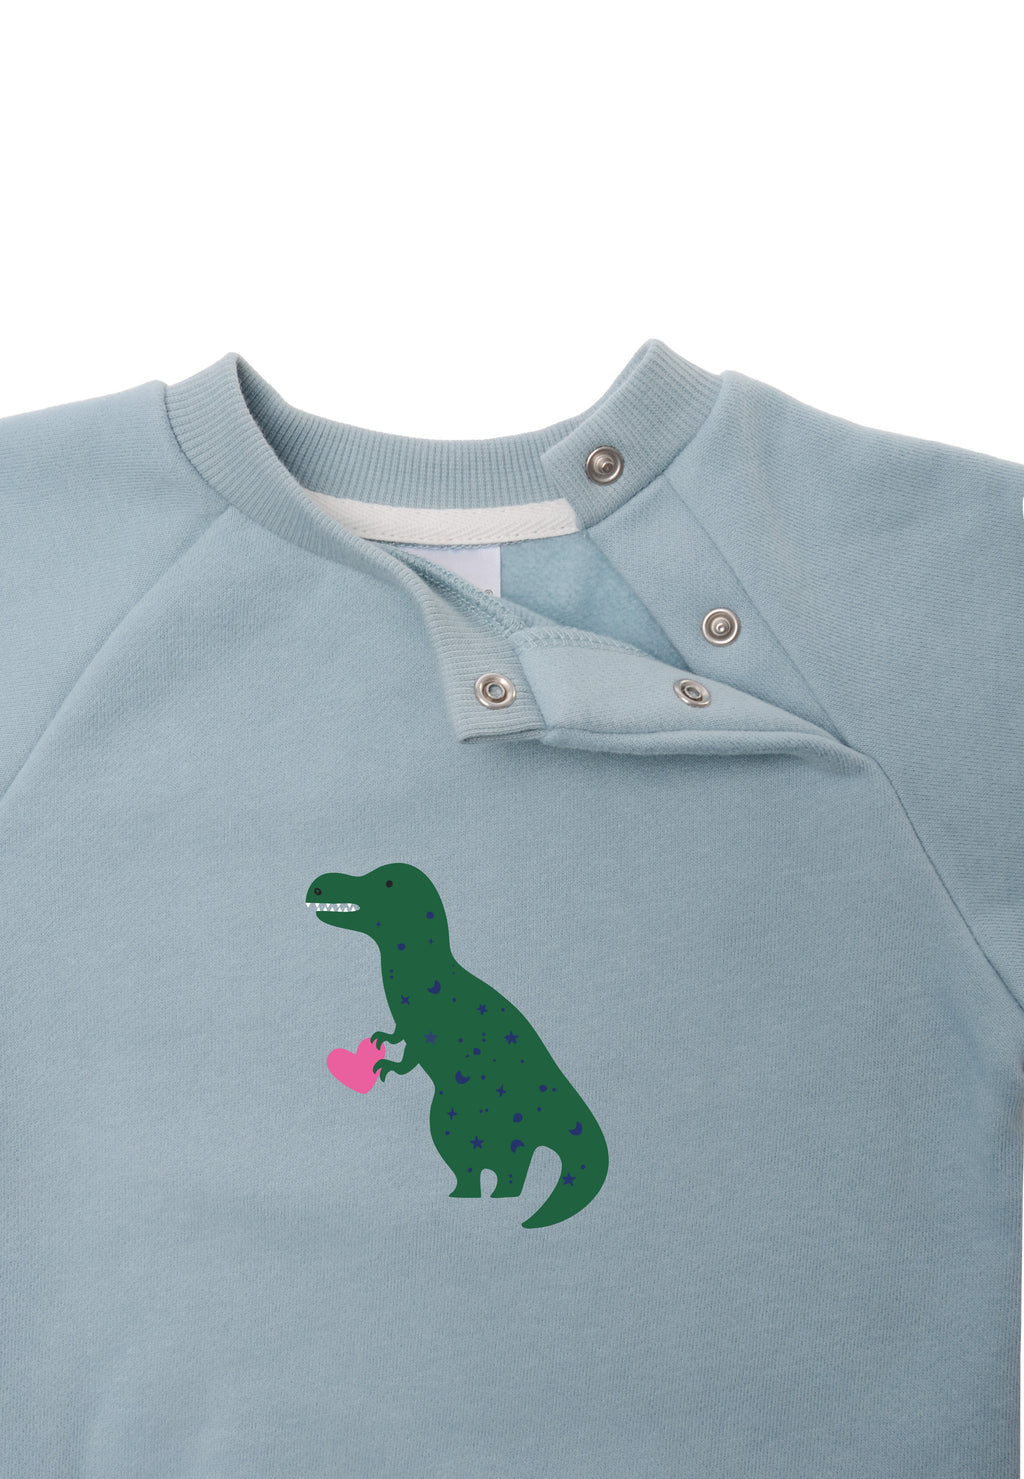 Sweatshirt in hellblau mit Raglan Ärmeln und Dinoprint